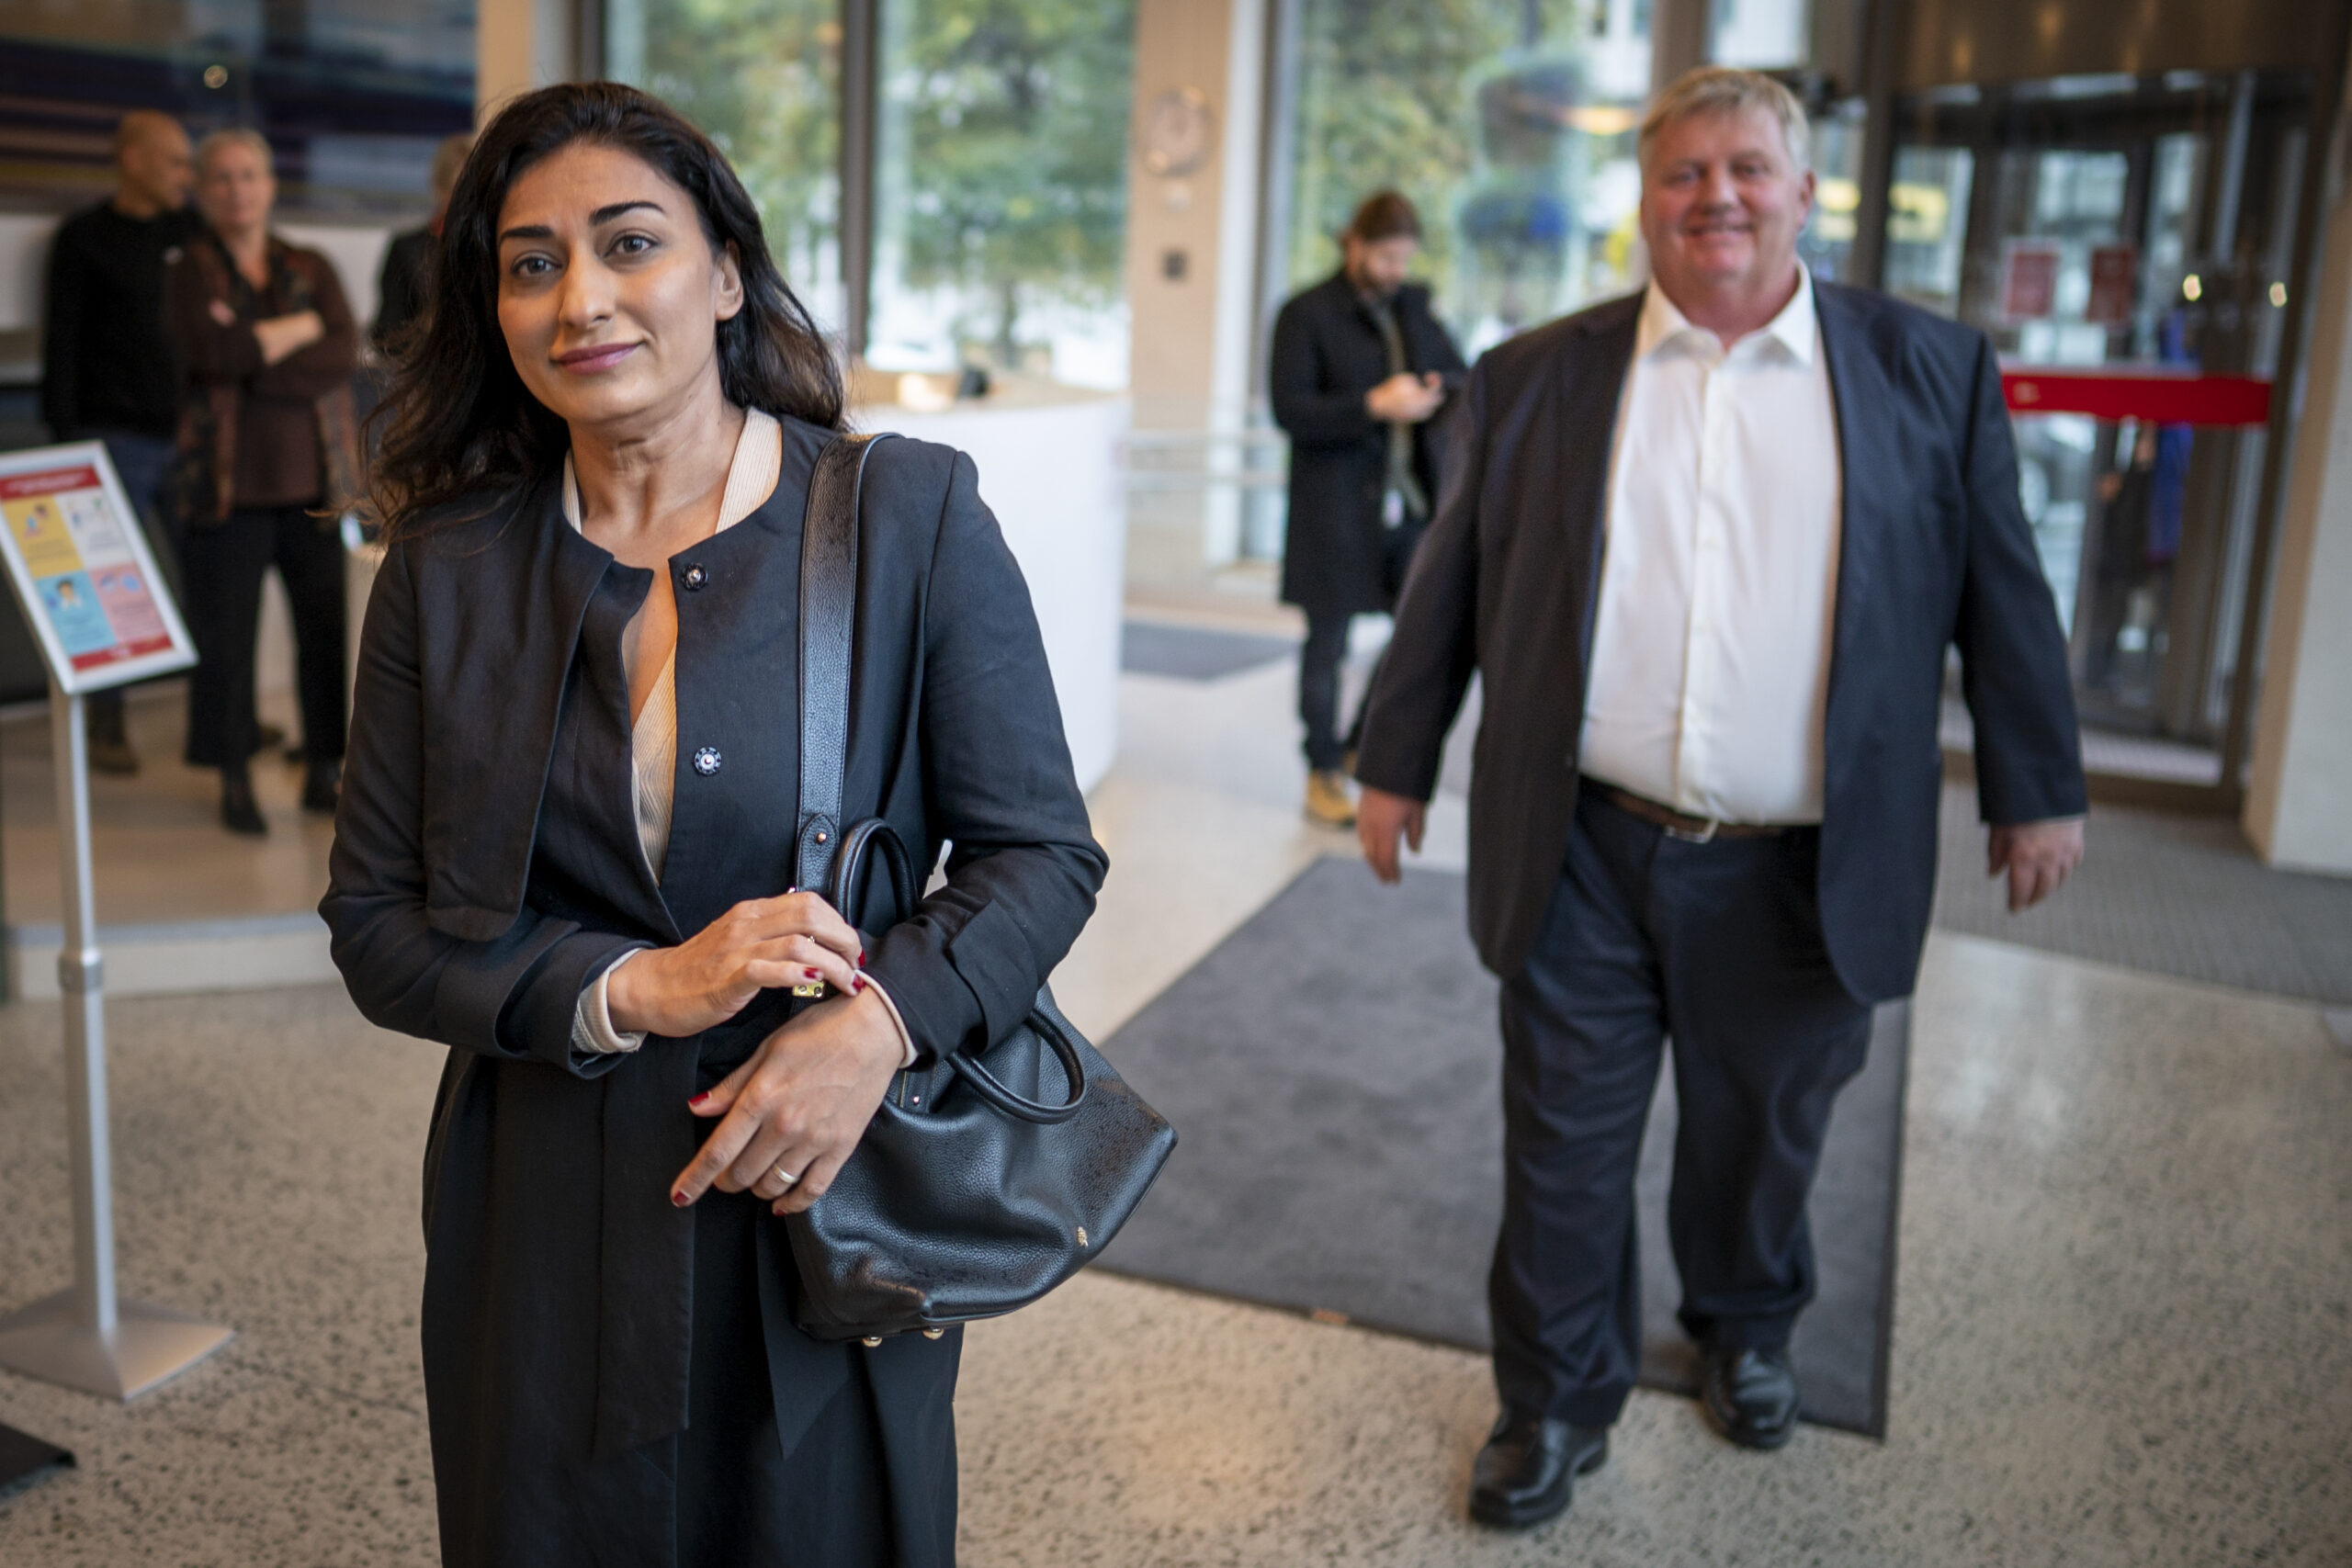 Shabana Rehman på vei til pressekonferanse for stiftelsen Født fri i forbindelse med Imdis granskning, 6. oktober 2020.